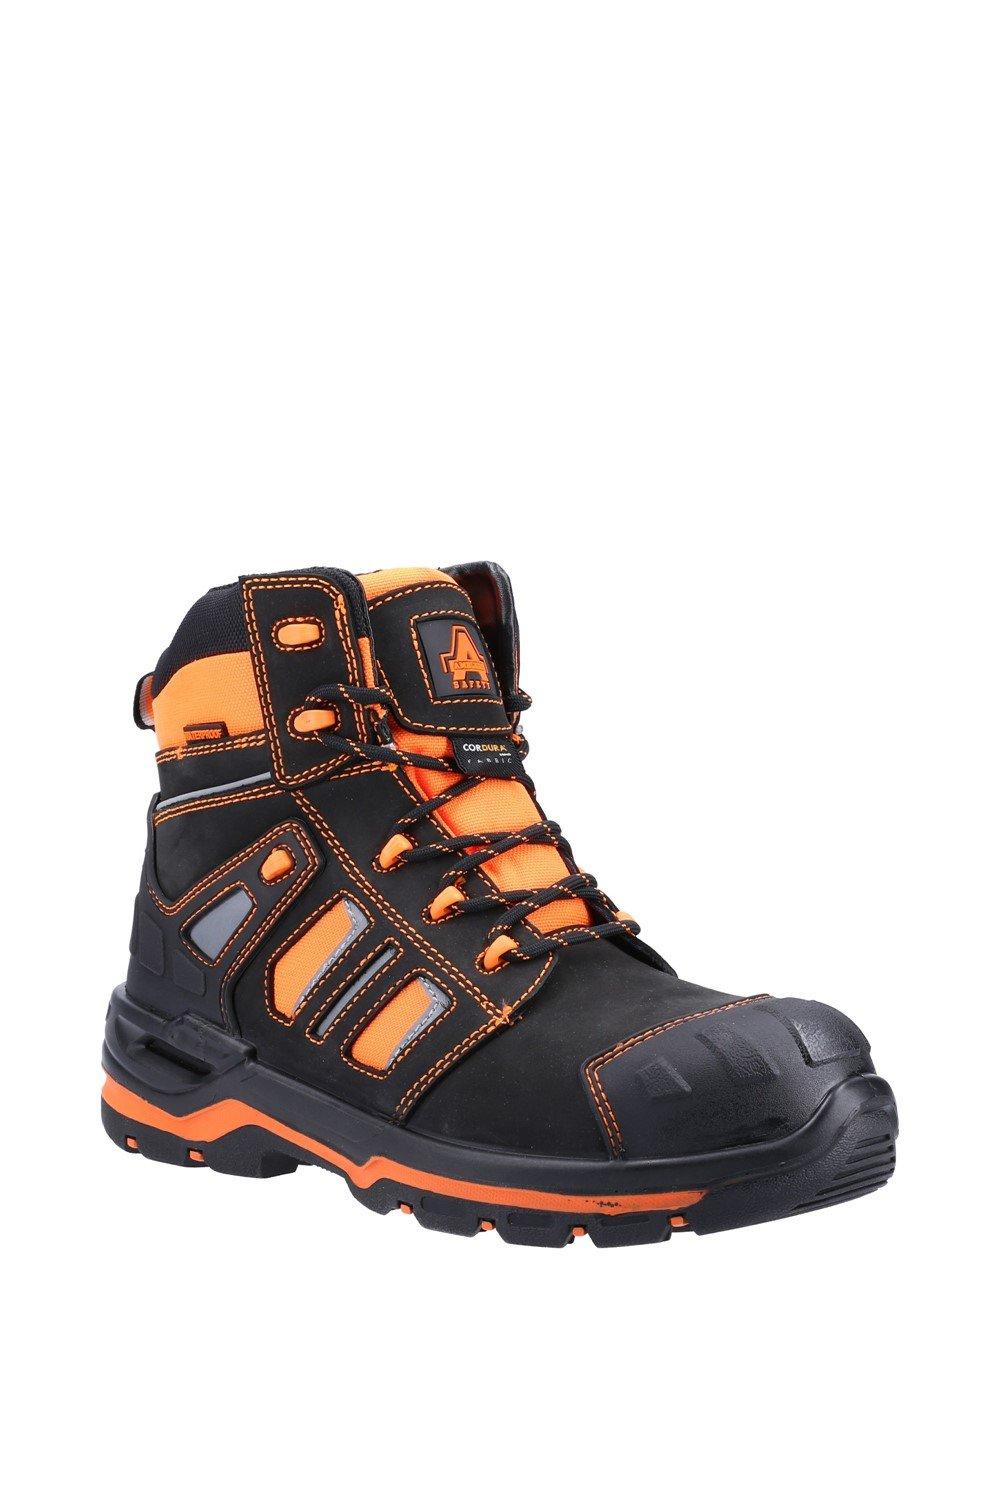 «Сияющие» защитные ботинки Amblers Safety, оранжевый